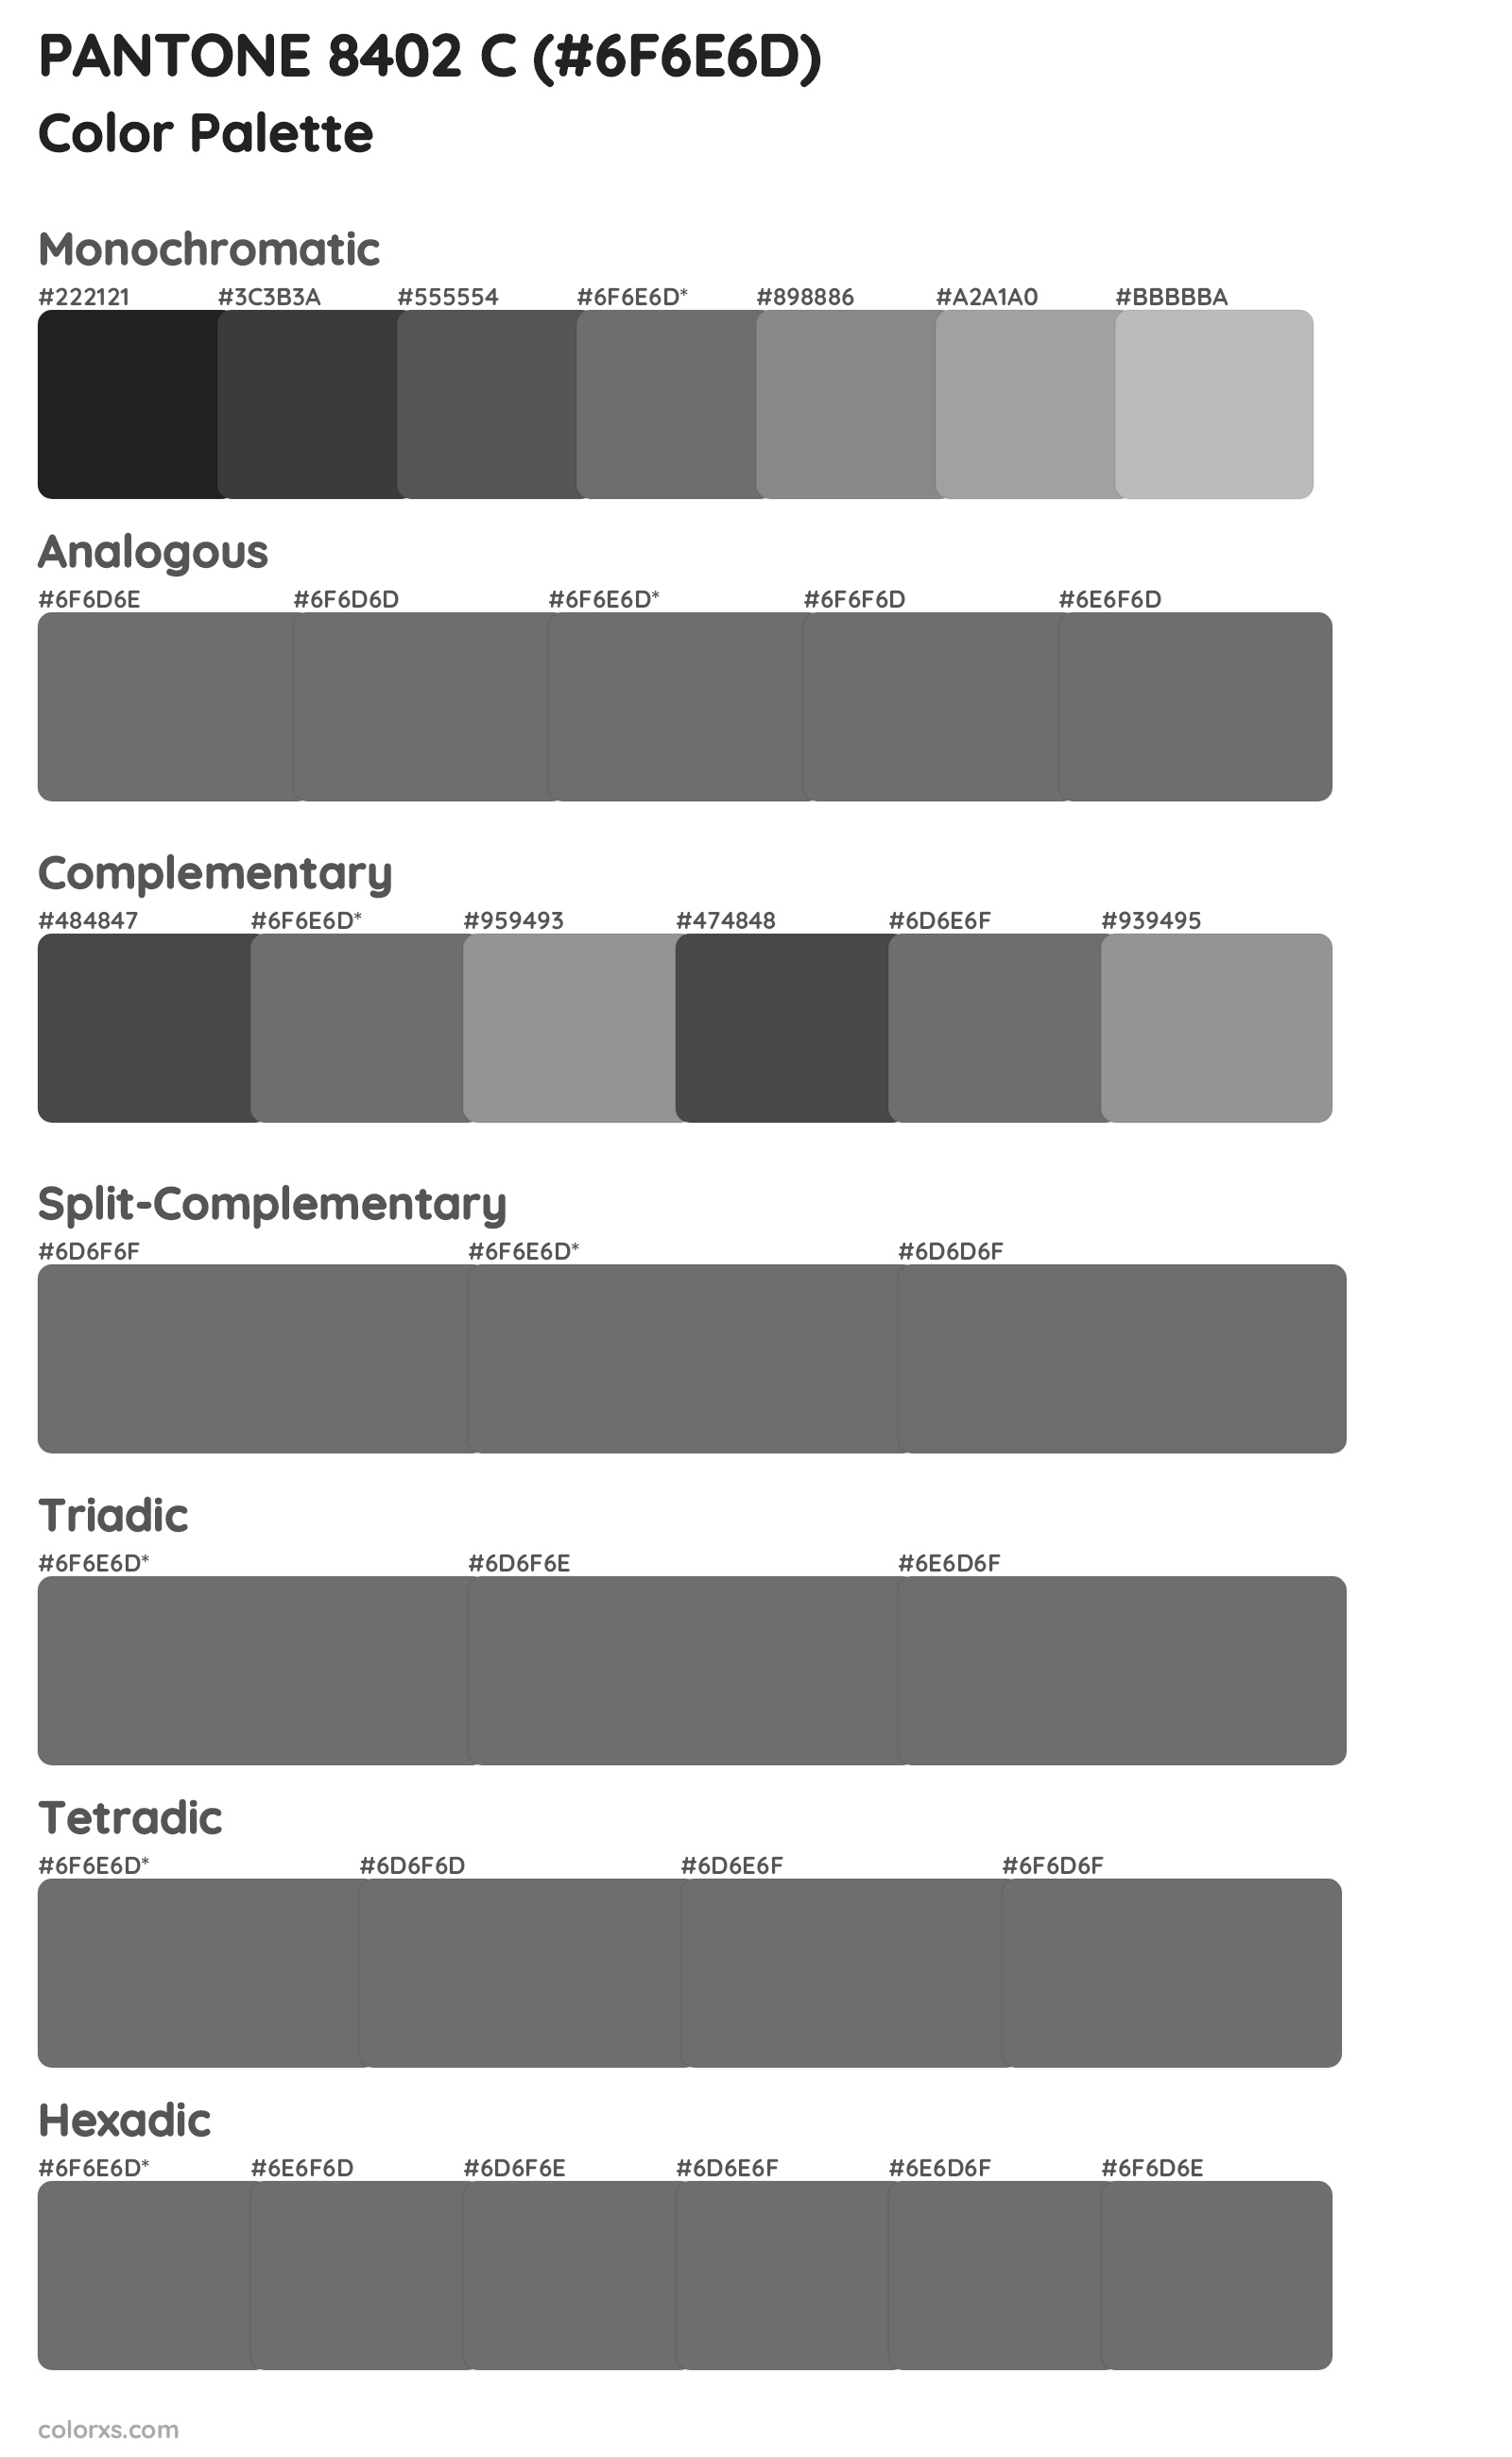 PANTONE 8402 C Color Scheme Palettes